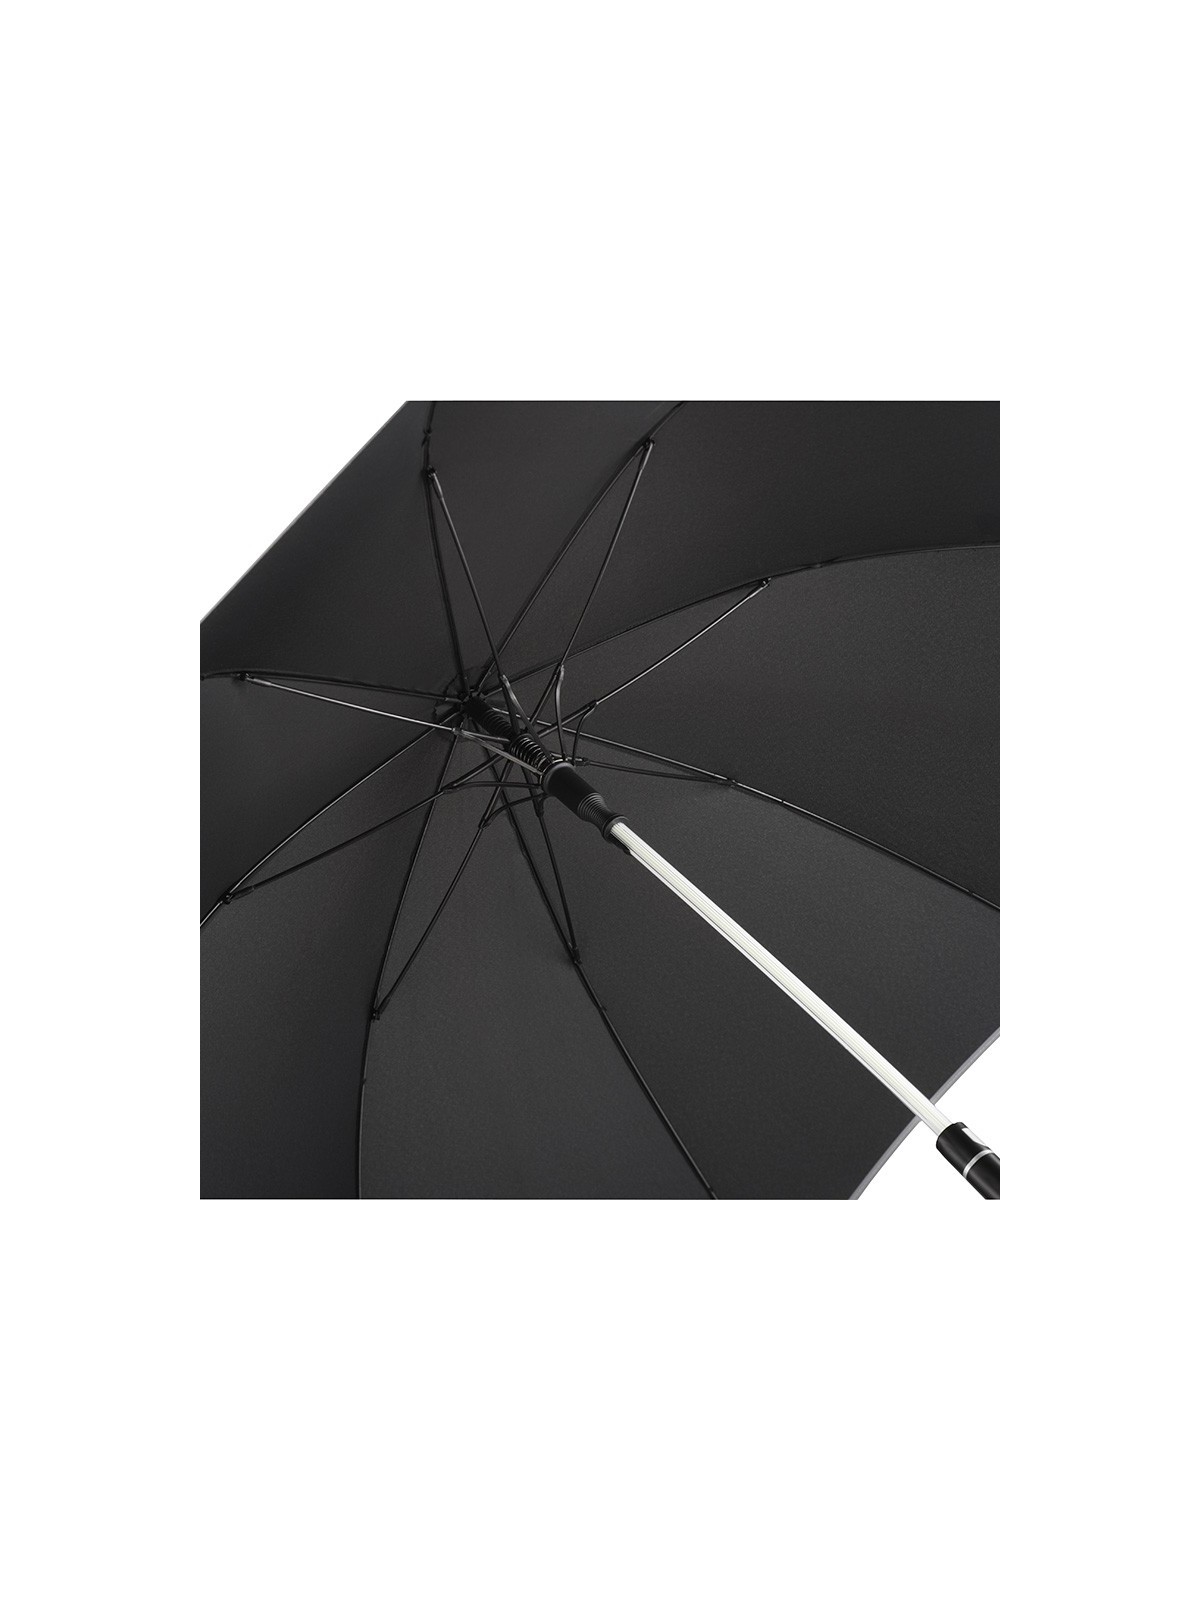 75-033 Parapluie publicitaire mât coloré personnalisé